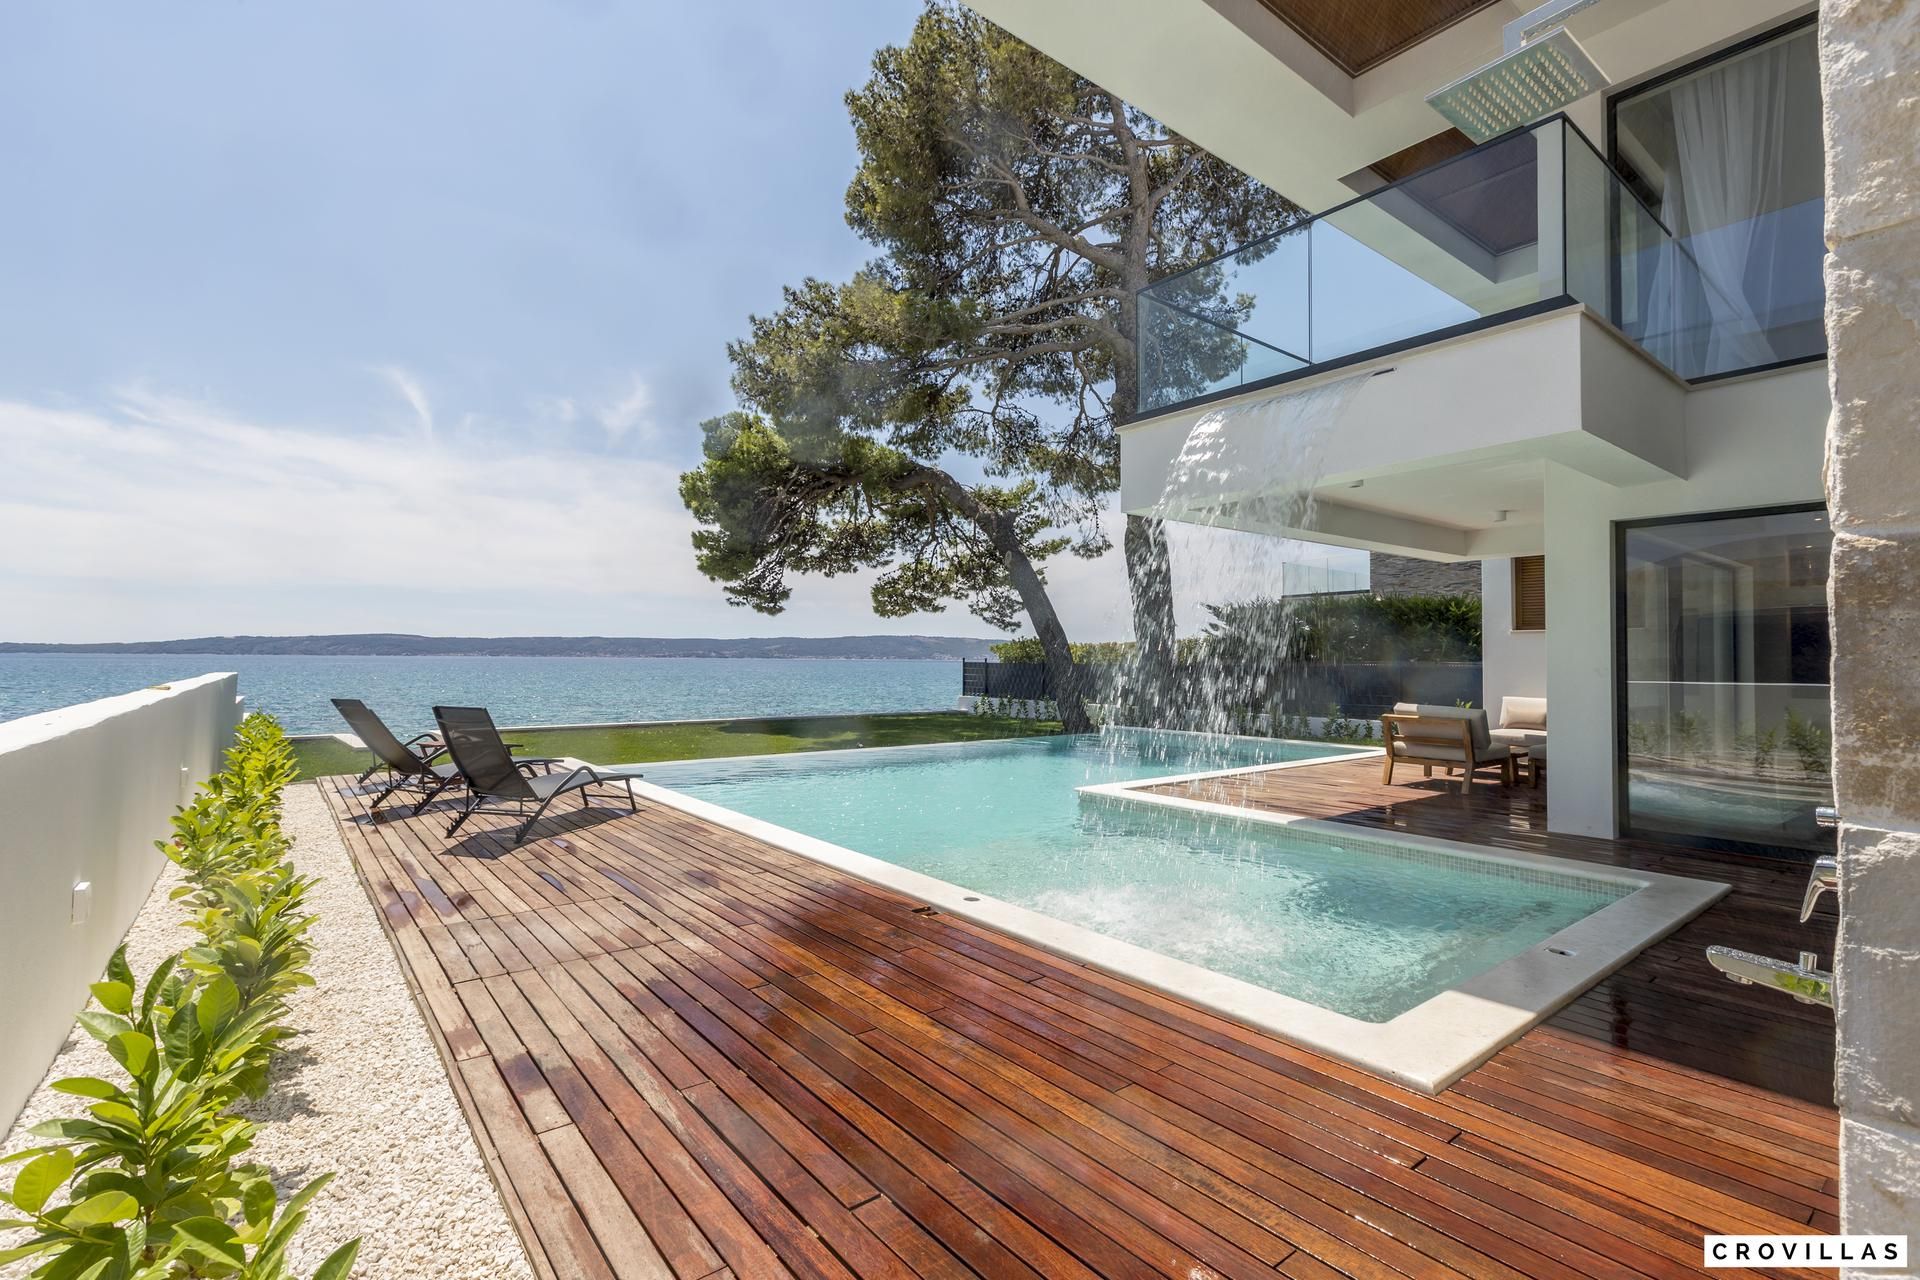 Rent exclusive luxury villas in Croatia – Dream holiday villas by the sea